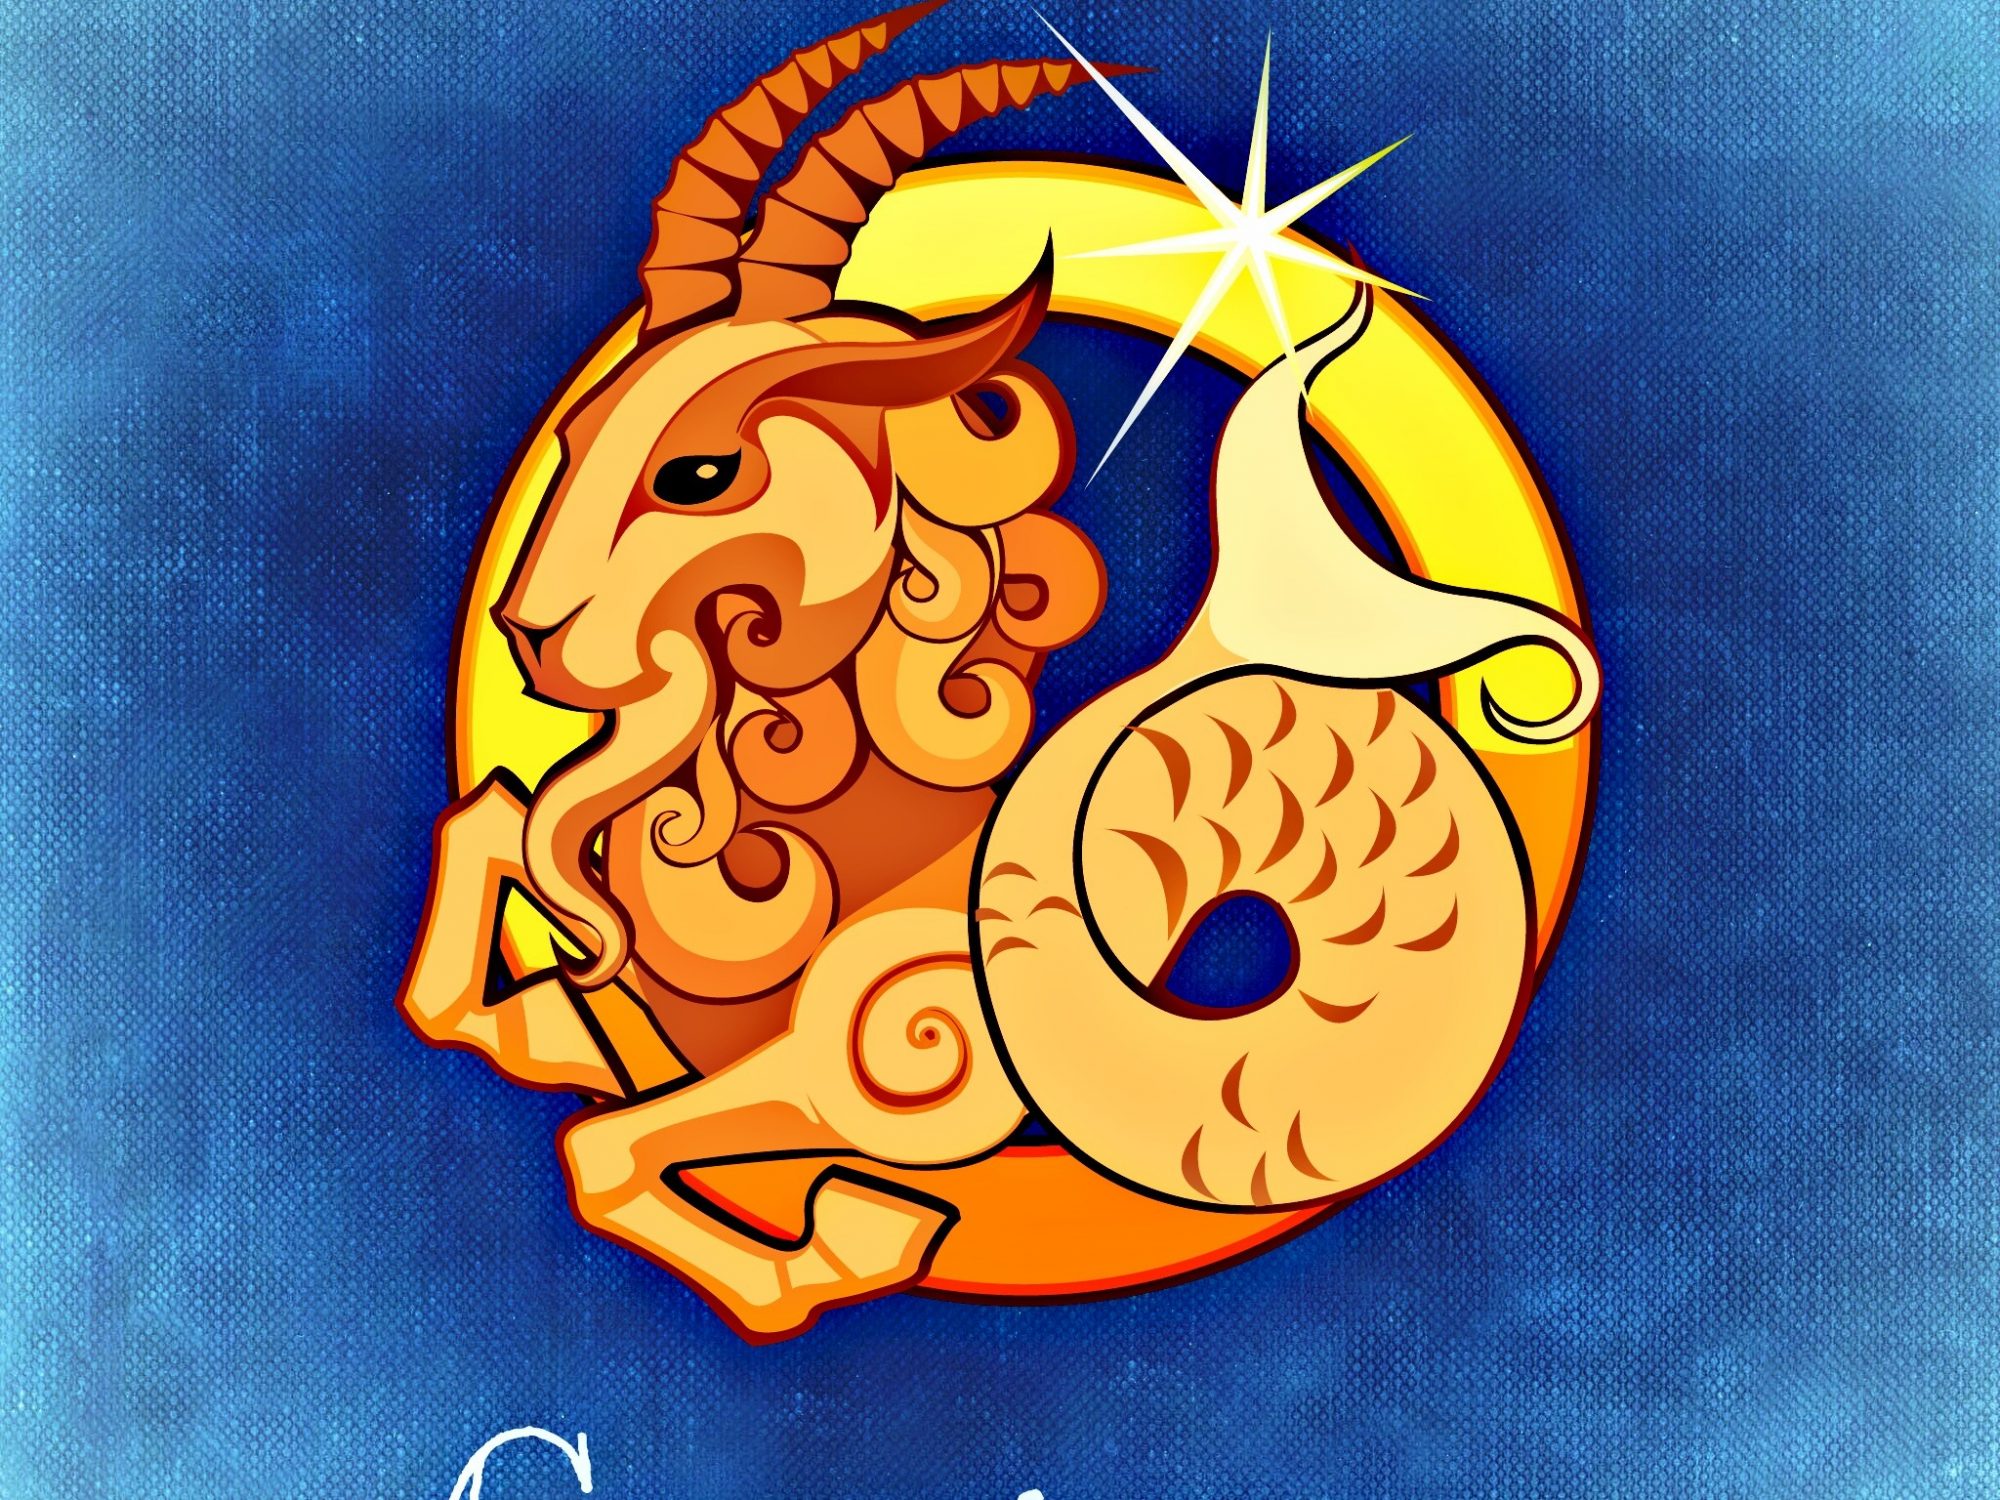 Capricorn Horoscope - Friendship, Love, Relationship, Career